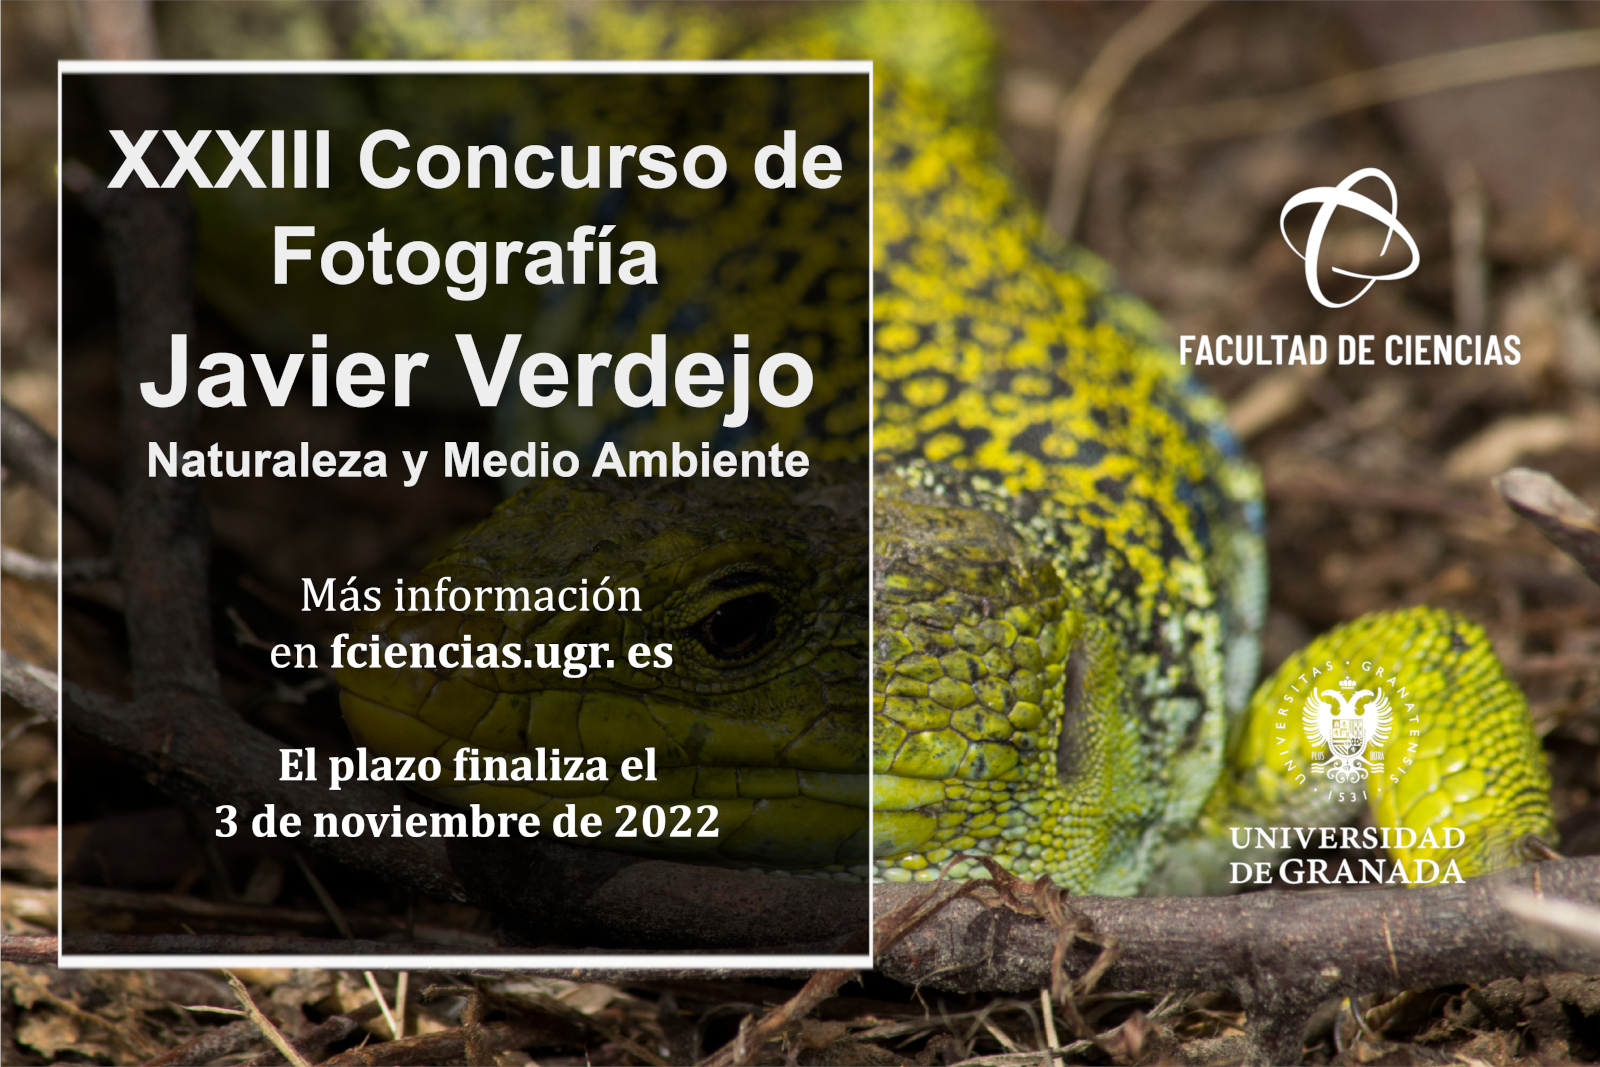 XXXIII Concurso de Fotografía Javier Verdejo 